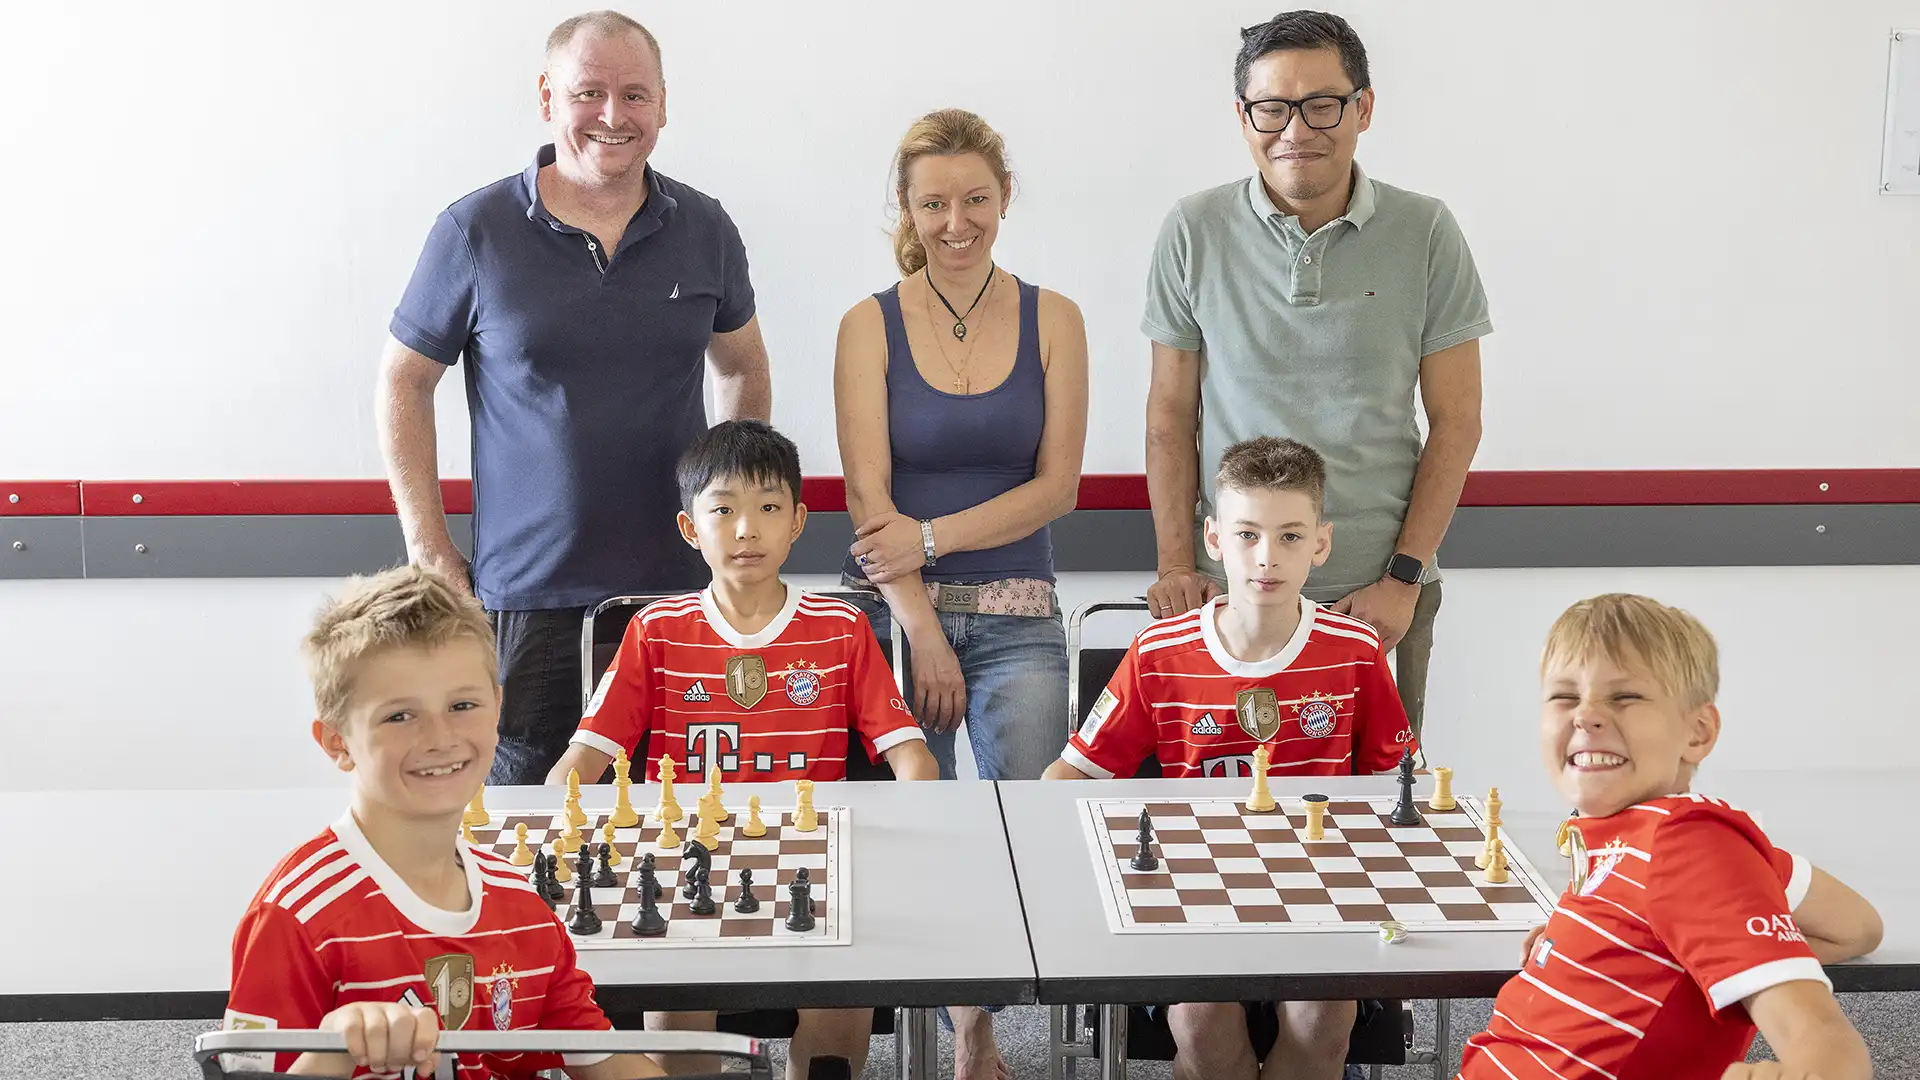 Farbfoto: Die junge Schach-Mannschaft des FC Bayern München mit 4 Kindern sitz an einem Tisch mit 2 Schachbrettern. Dahintrer stehen drei Eltern, die in Düsseldorf dabei waren. Alle gucken zum Betrachter.